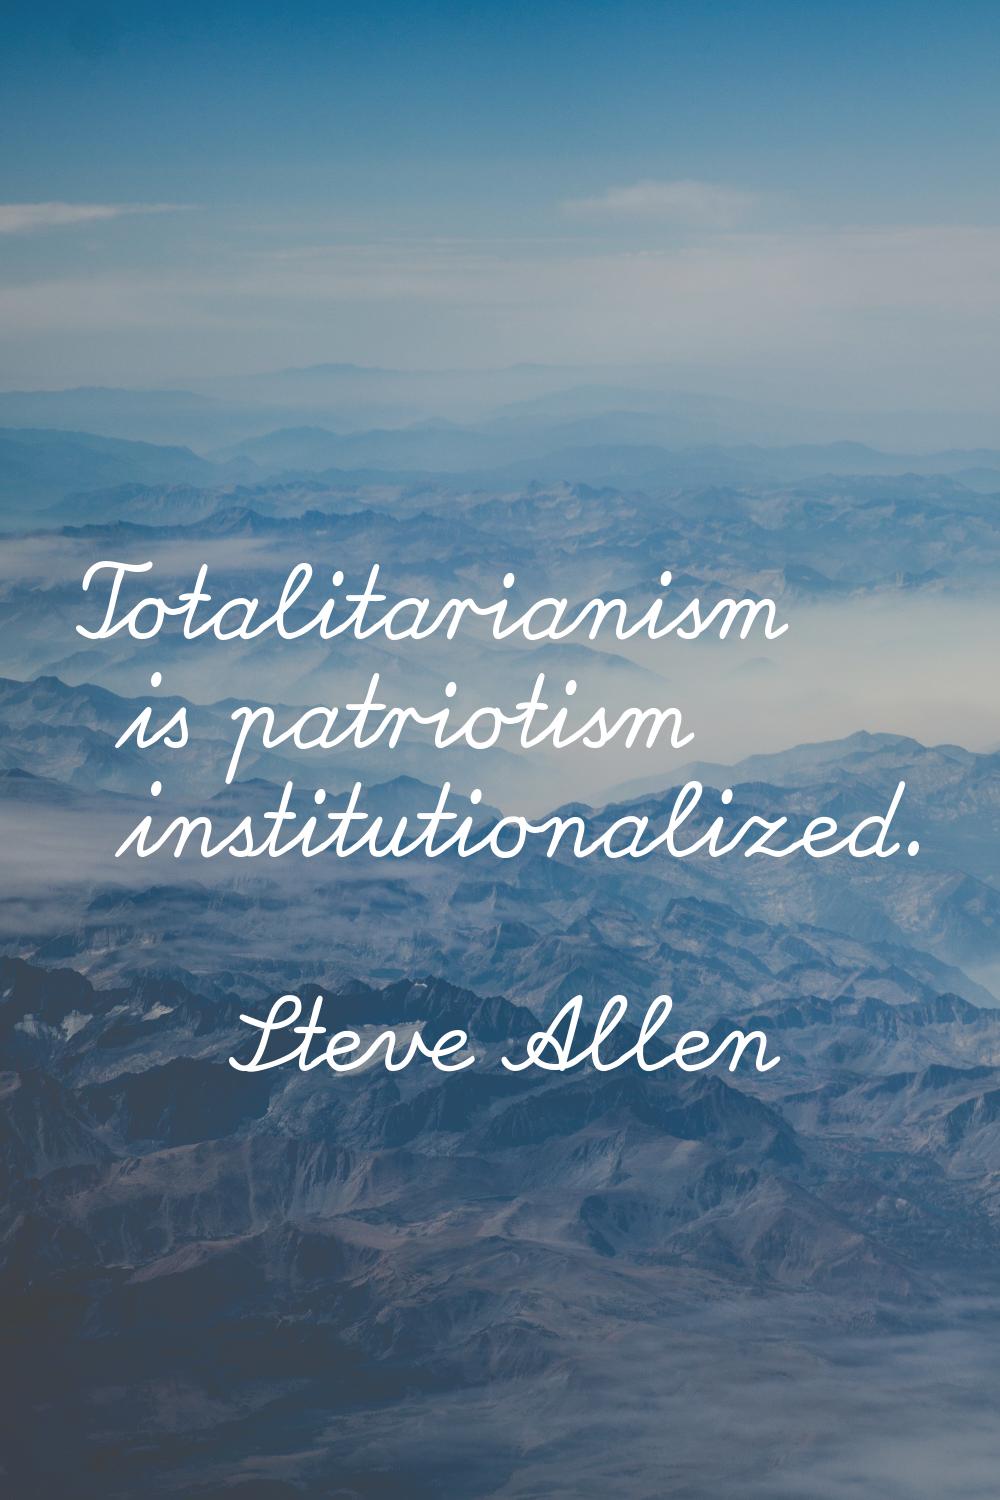 Totalitarianism is patriotism institutionalized.